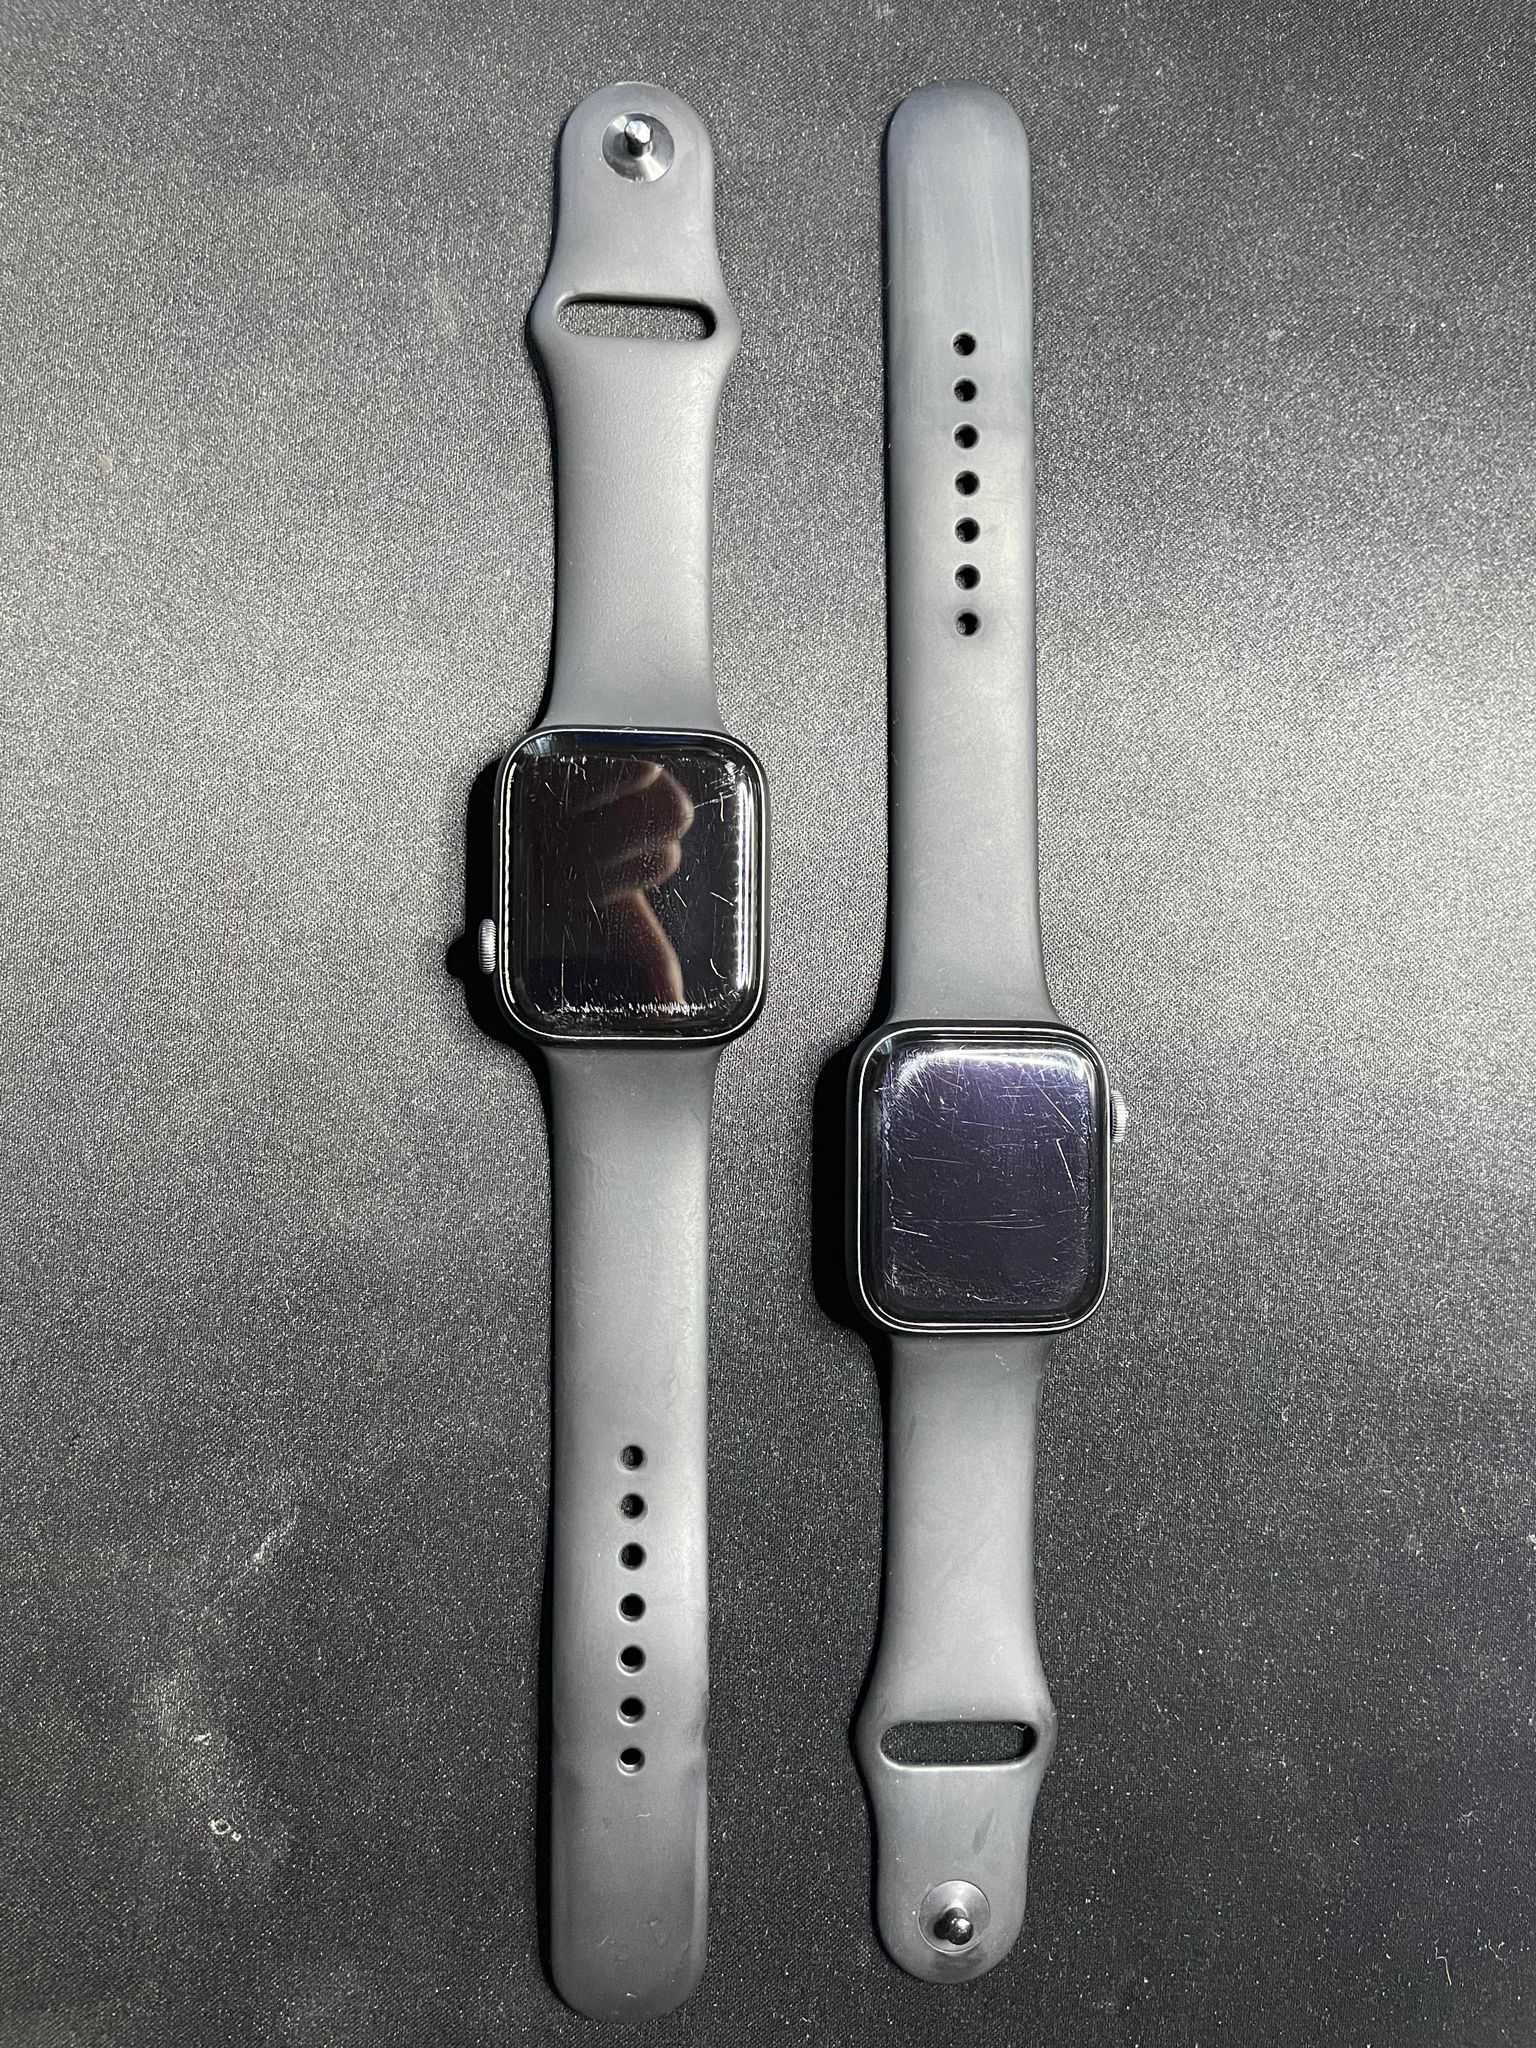 Apple Watch Serie 4 (44mm)